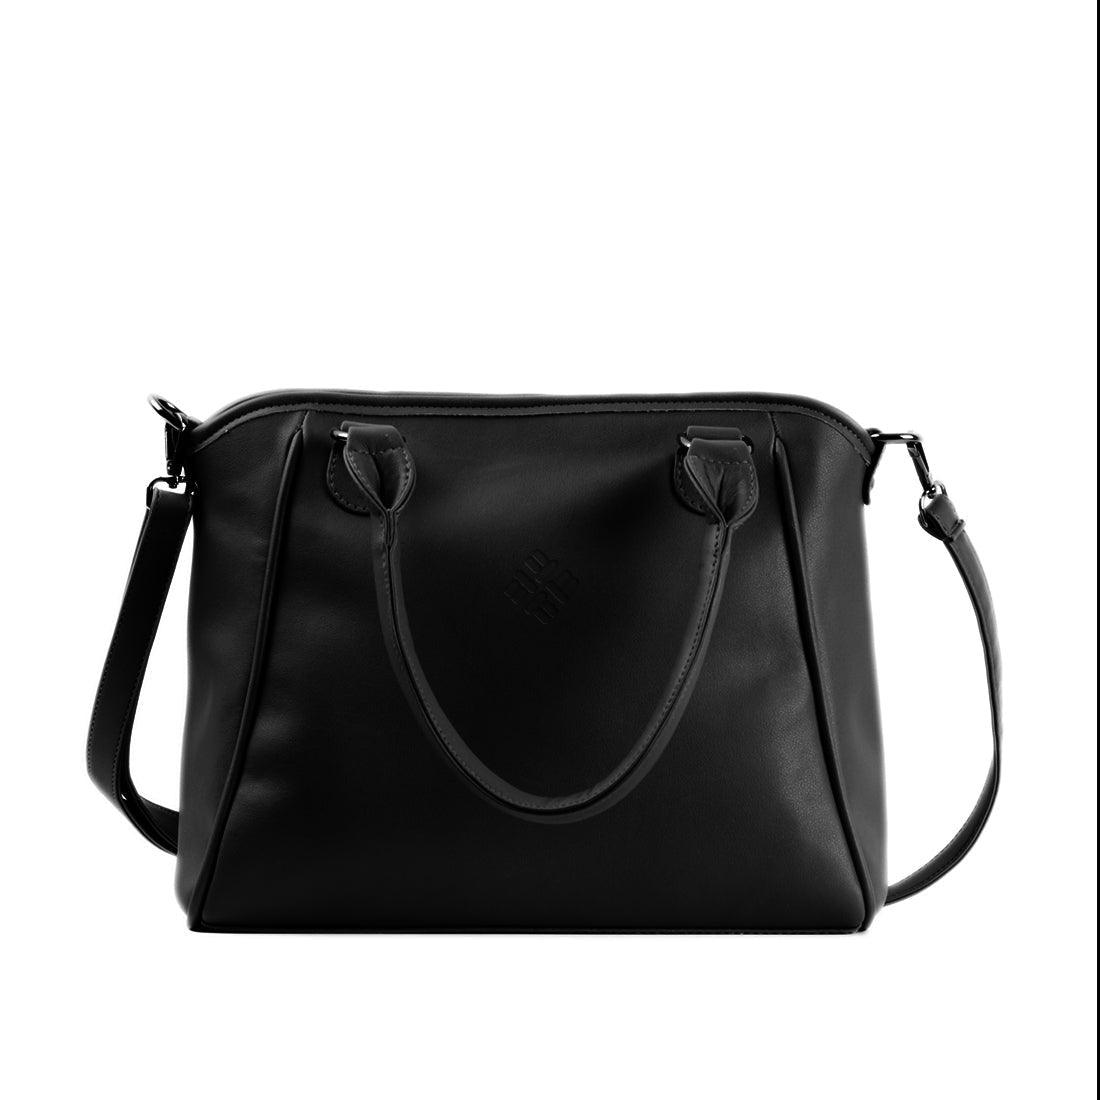 Black Ladies Handbag Shapes